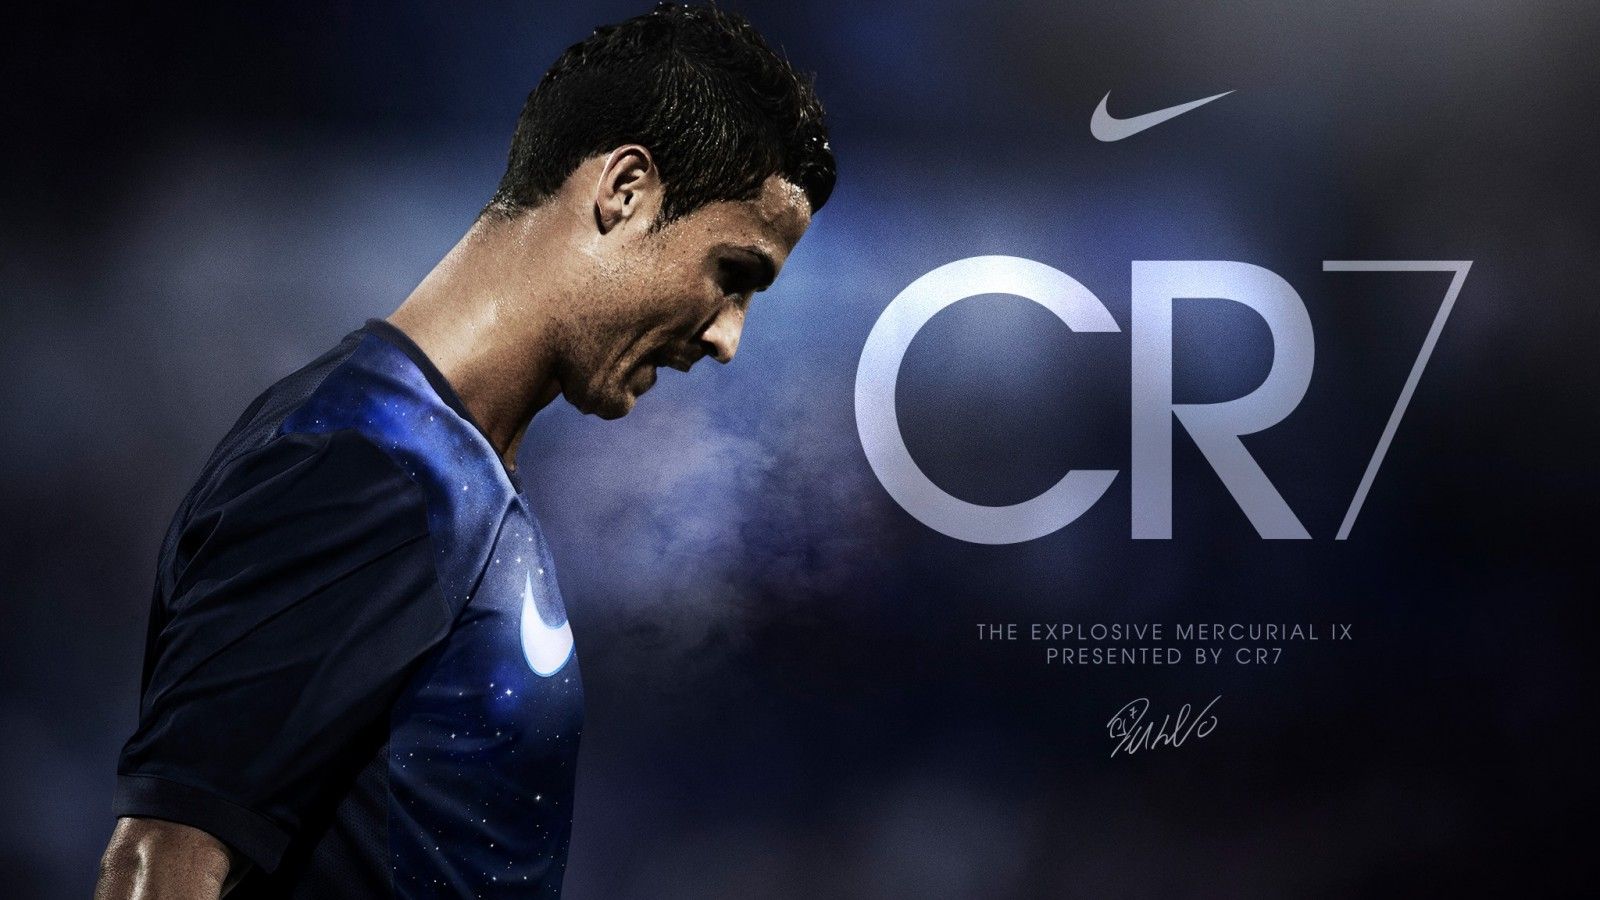 HD Wallpaper Ronaldo Find Best For